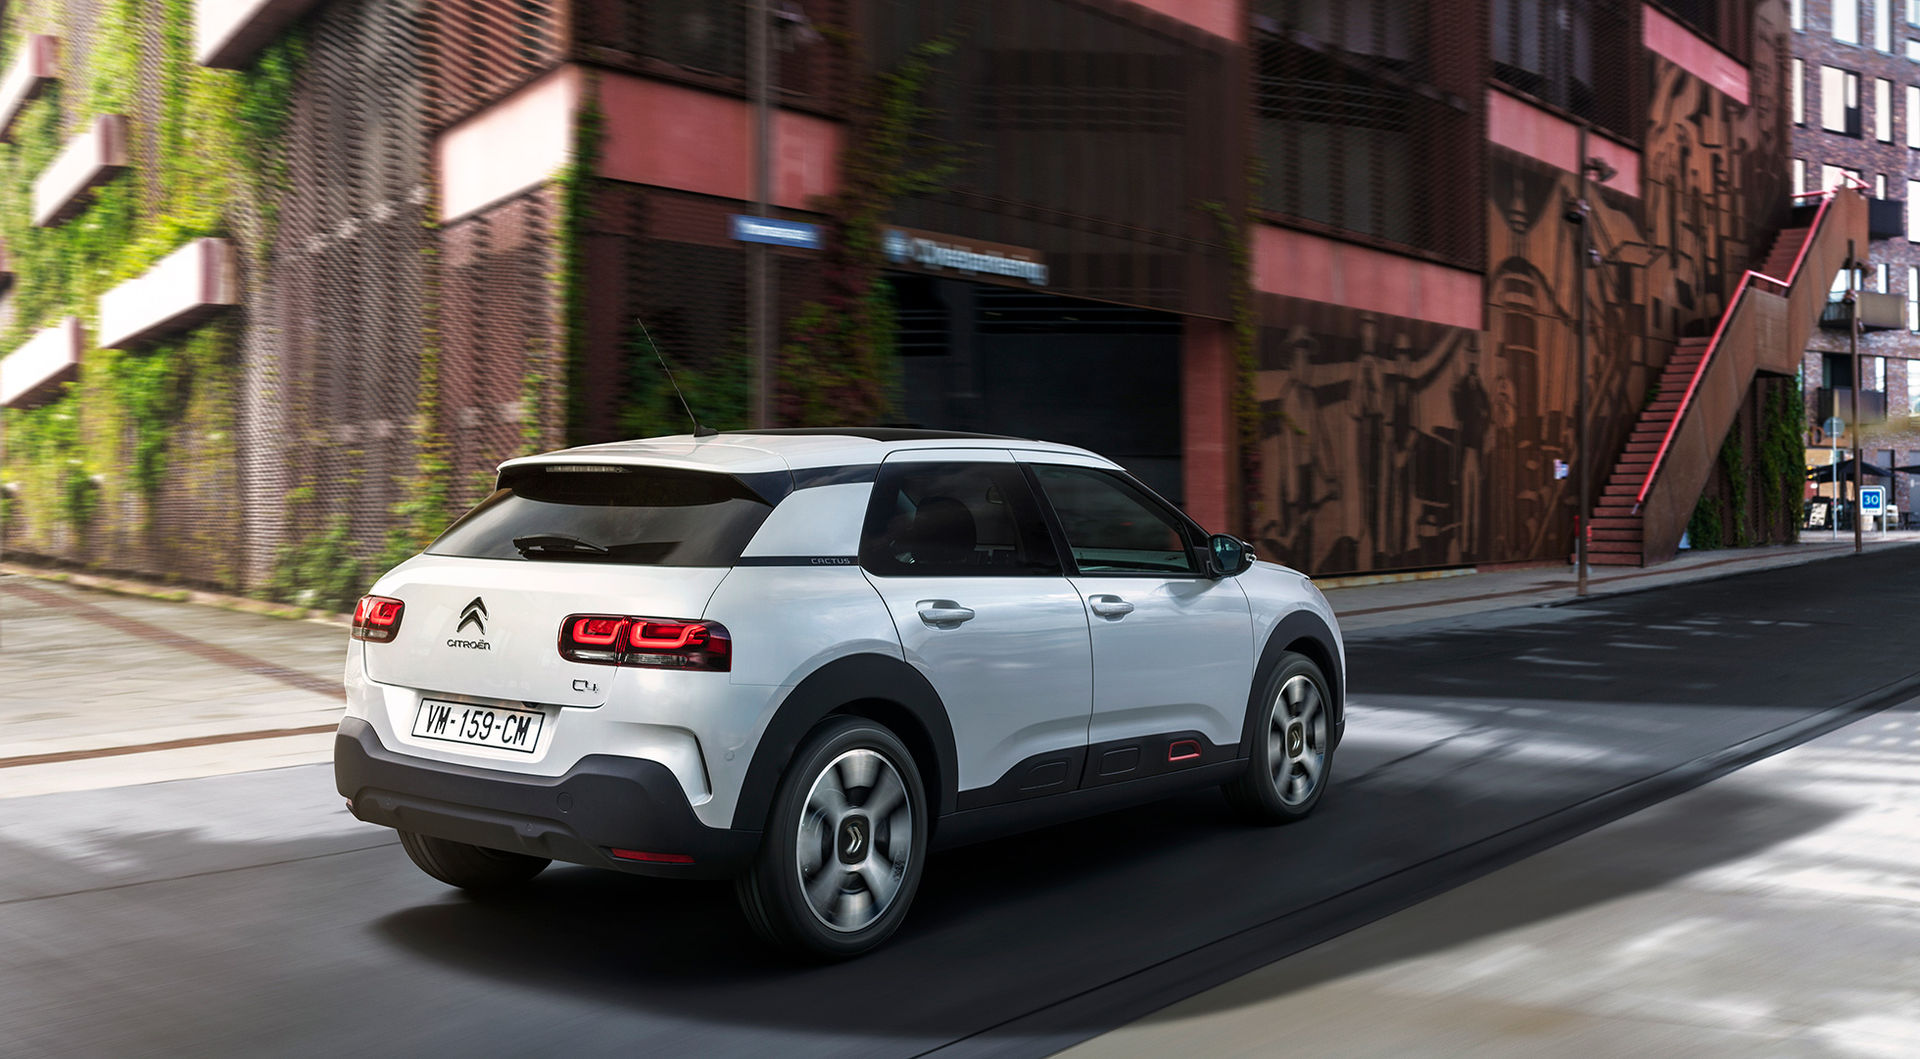 Uppföljaren till Citroën C4 Cactus kommer erbjudas med eldrift